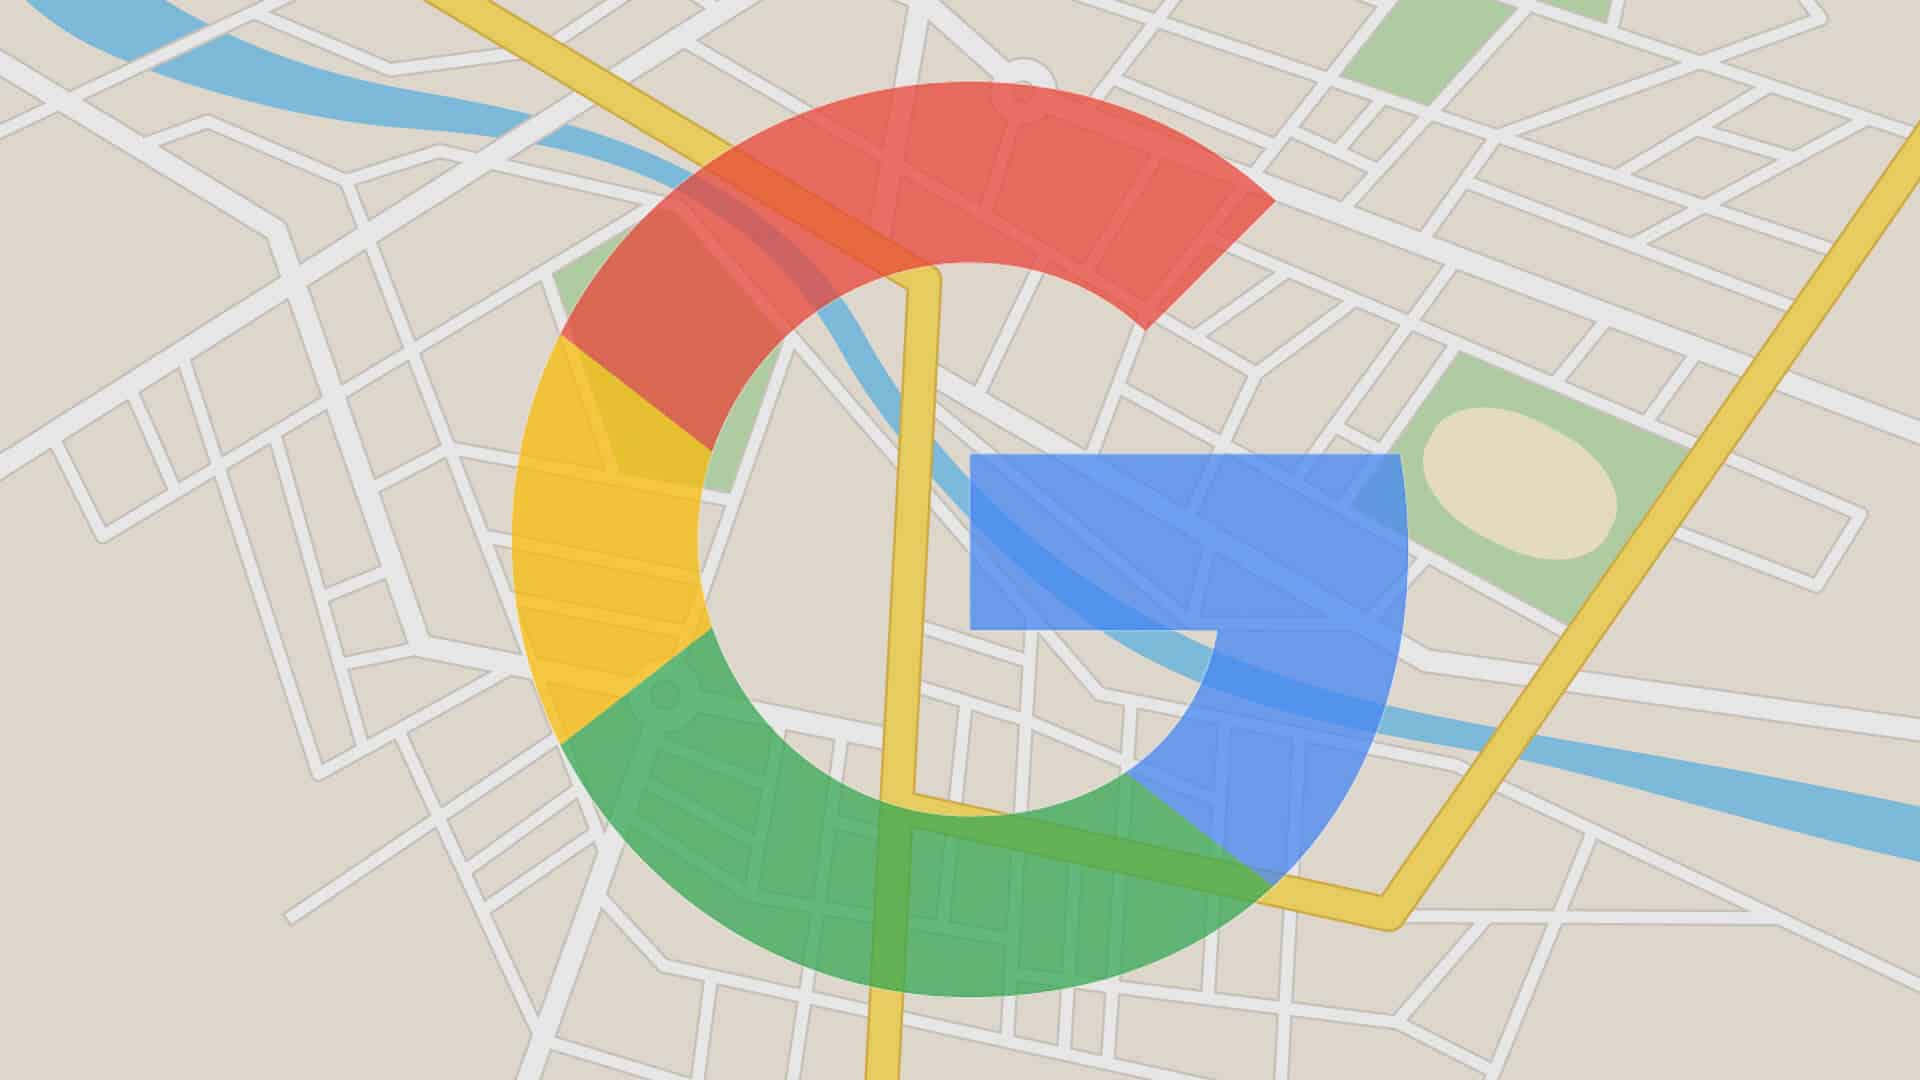 Google Maps permet désormais de suivre une personne en temps réel